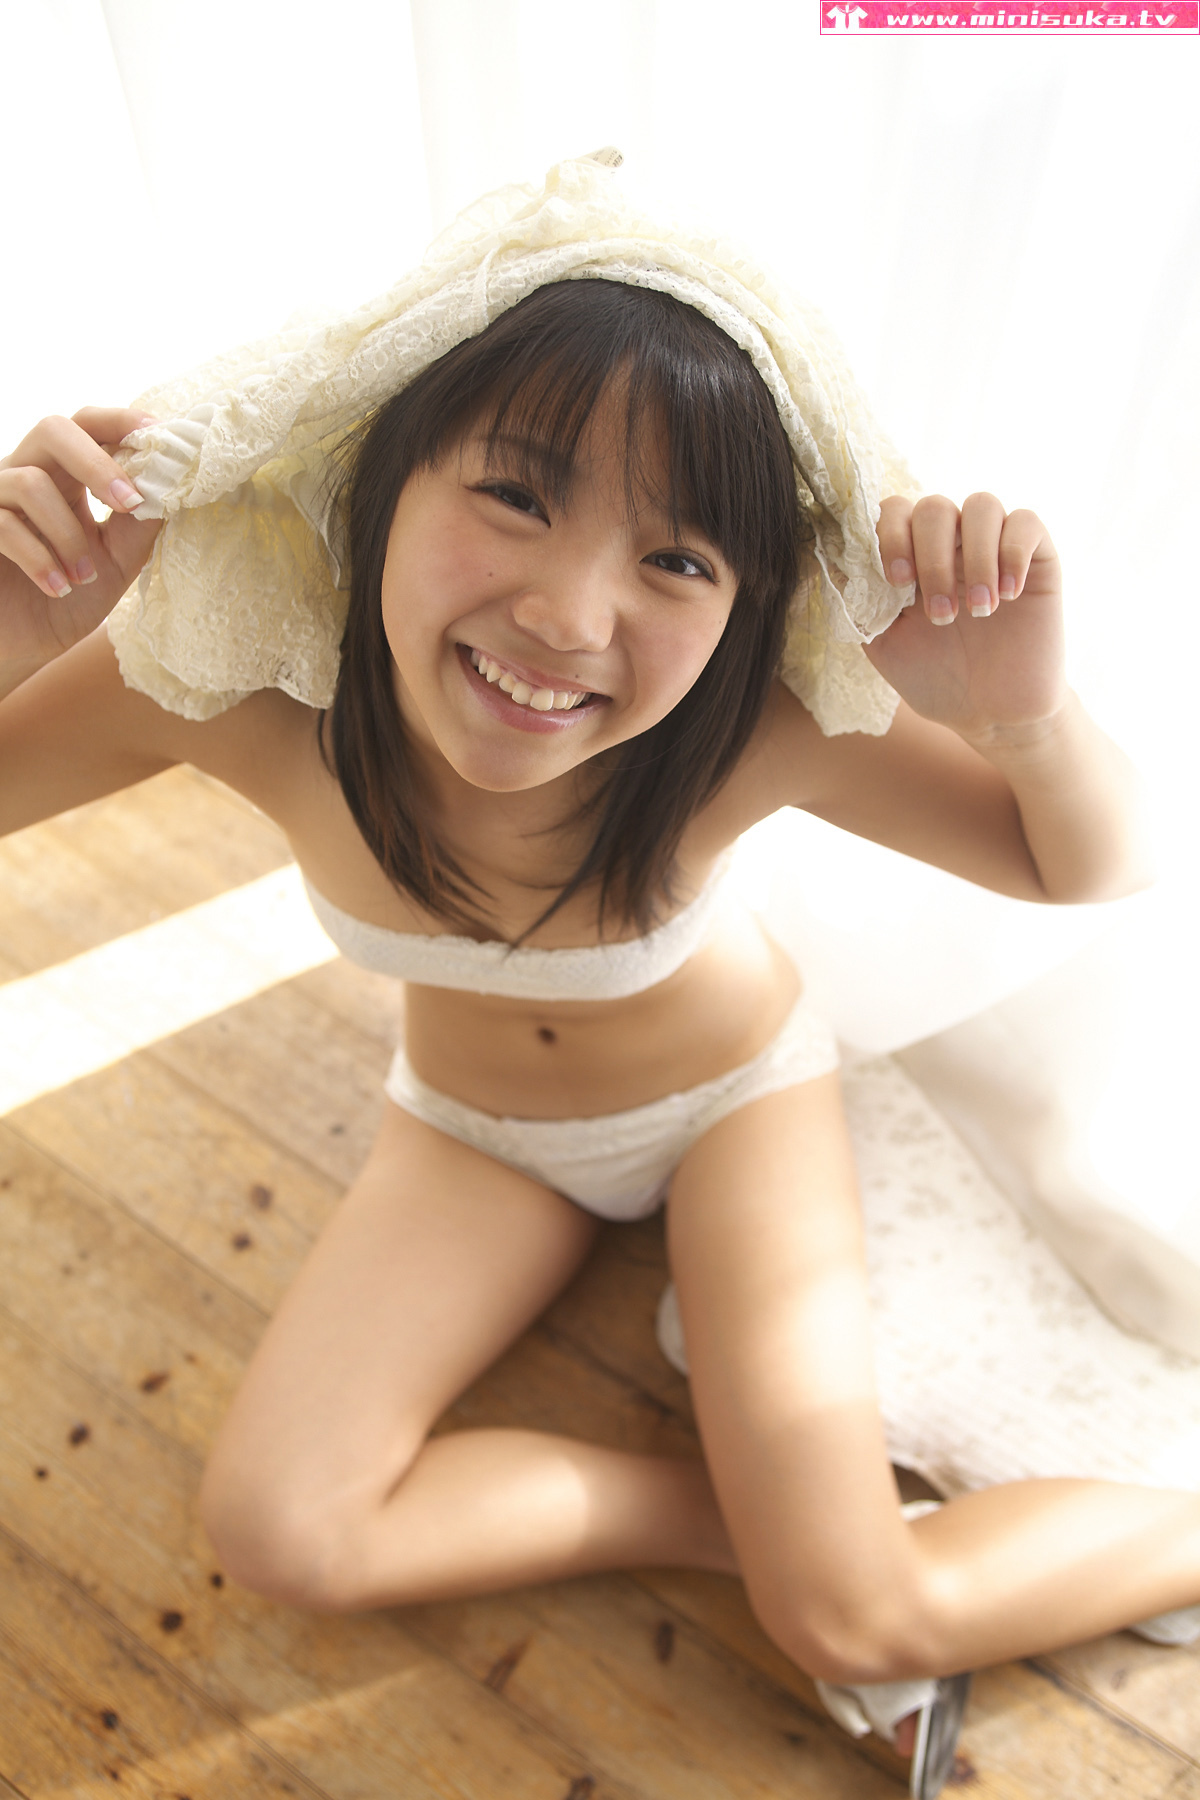 西浜ふうか Fuuka Nishihama [Minisuka.tv] 现役女子高生写真